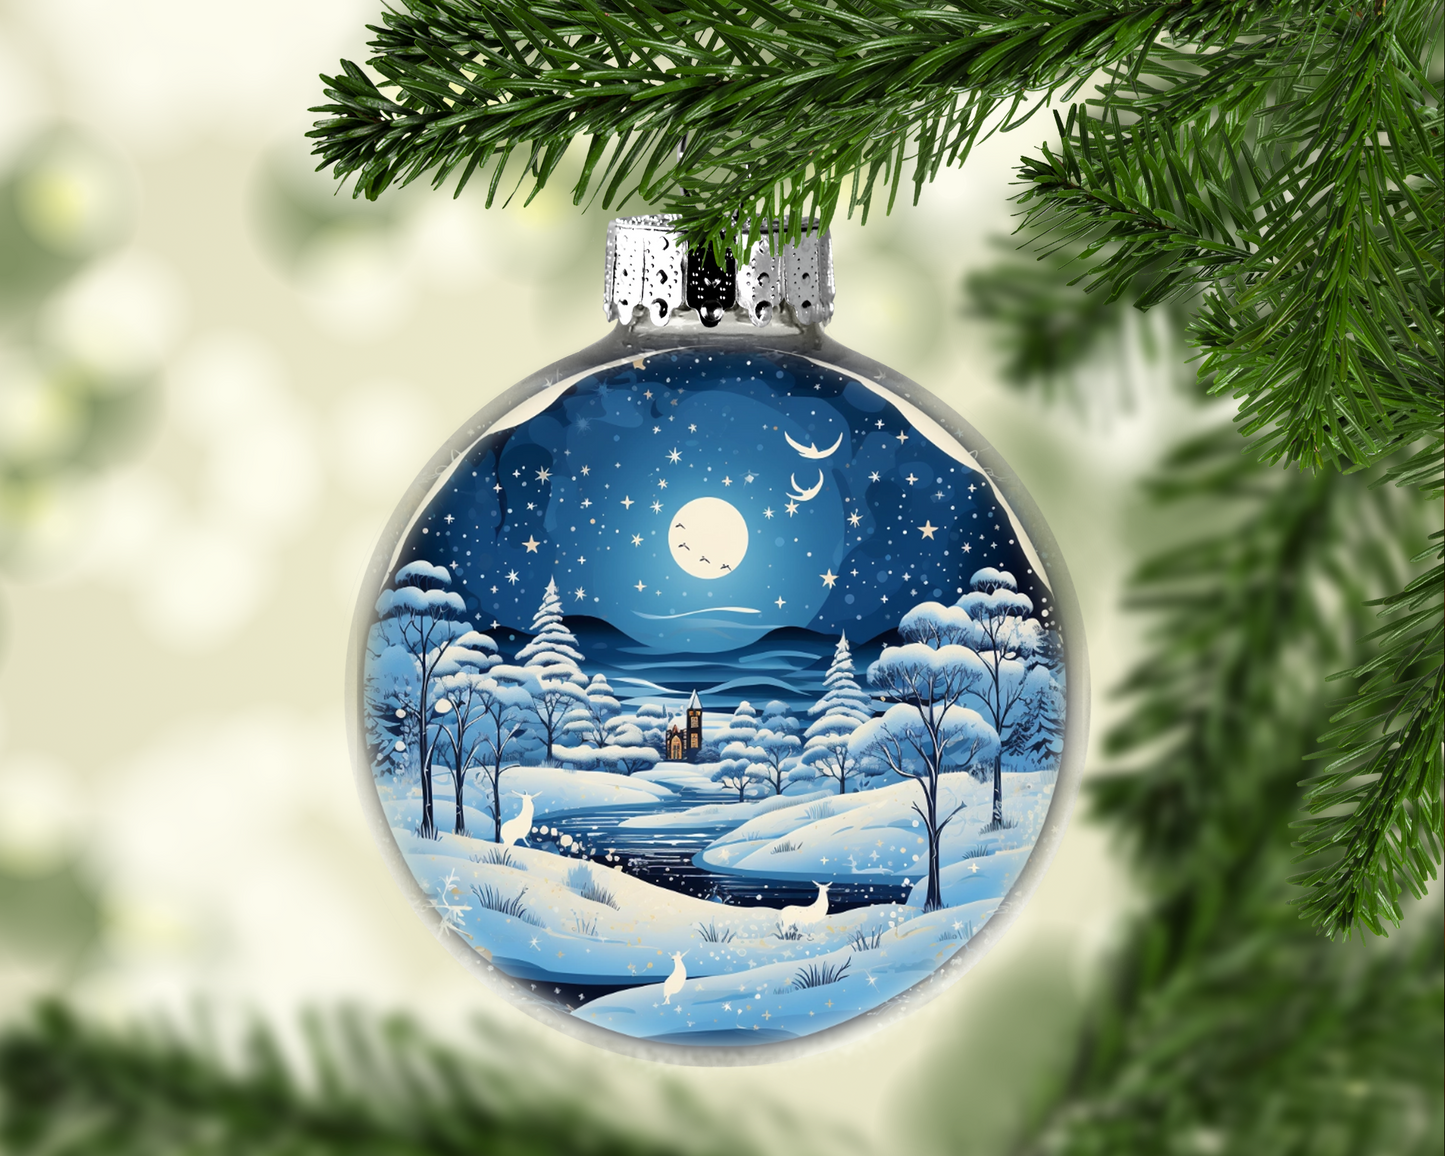 Winter Wonderland Scene Christmas Ornament